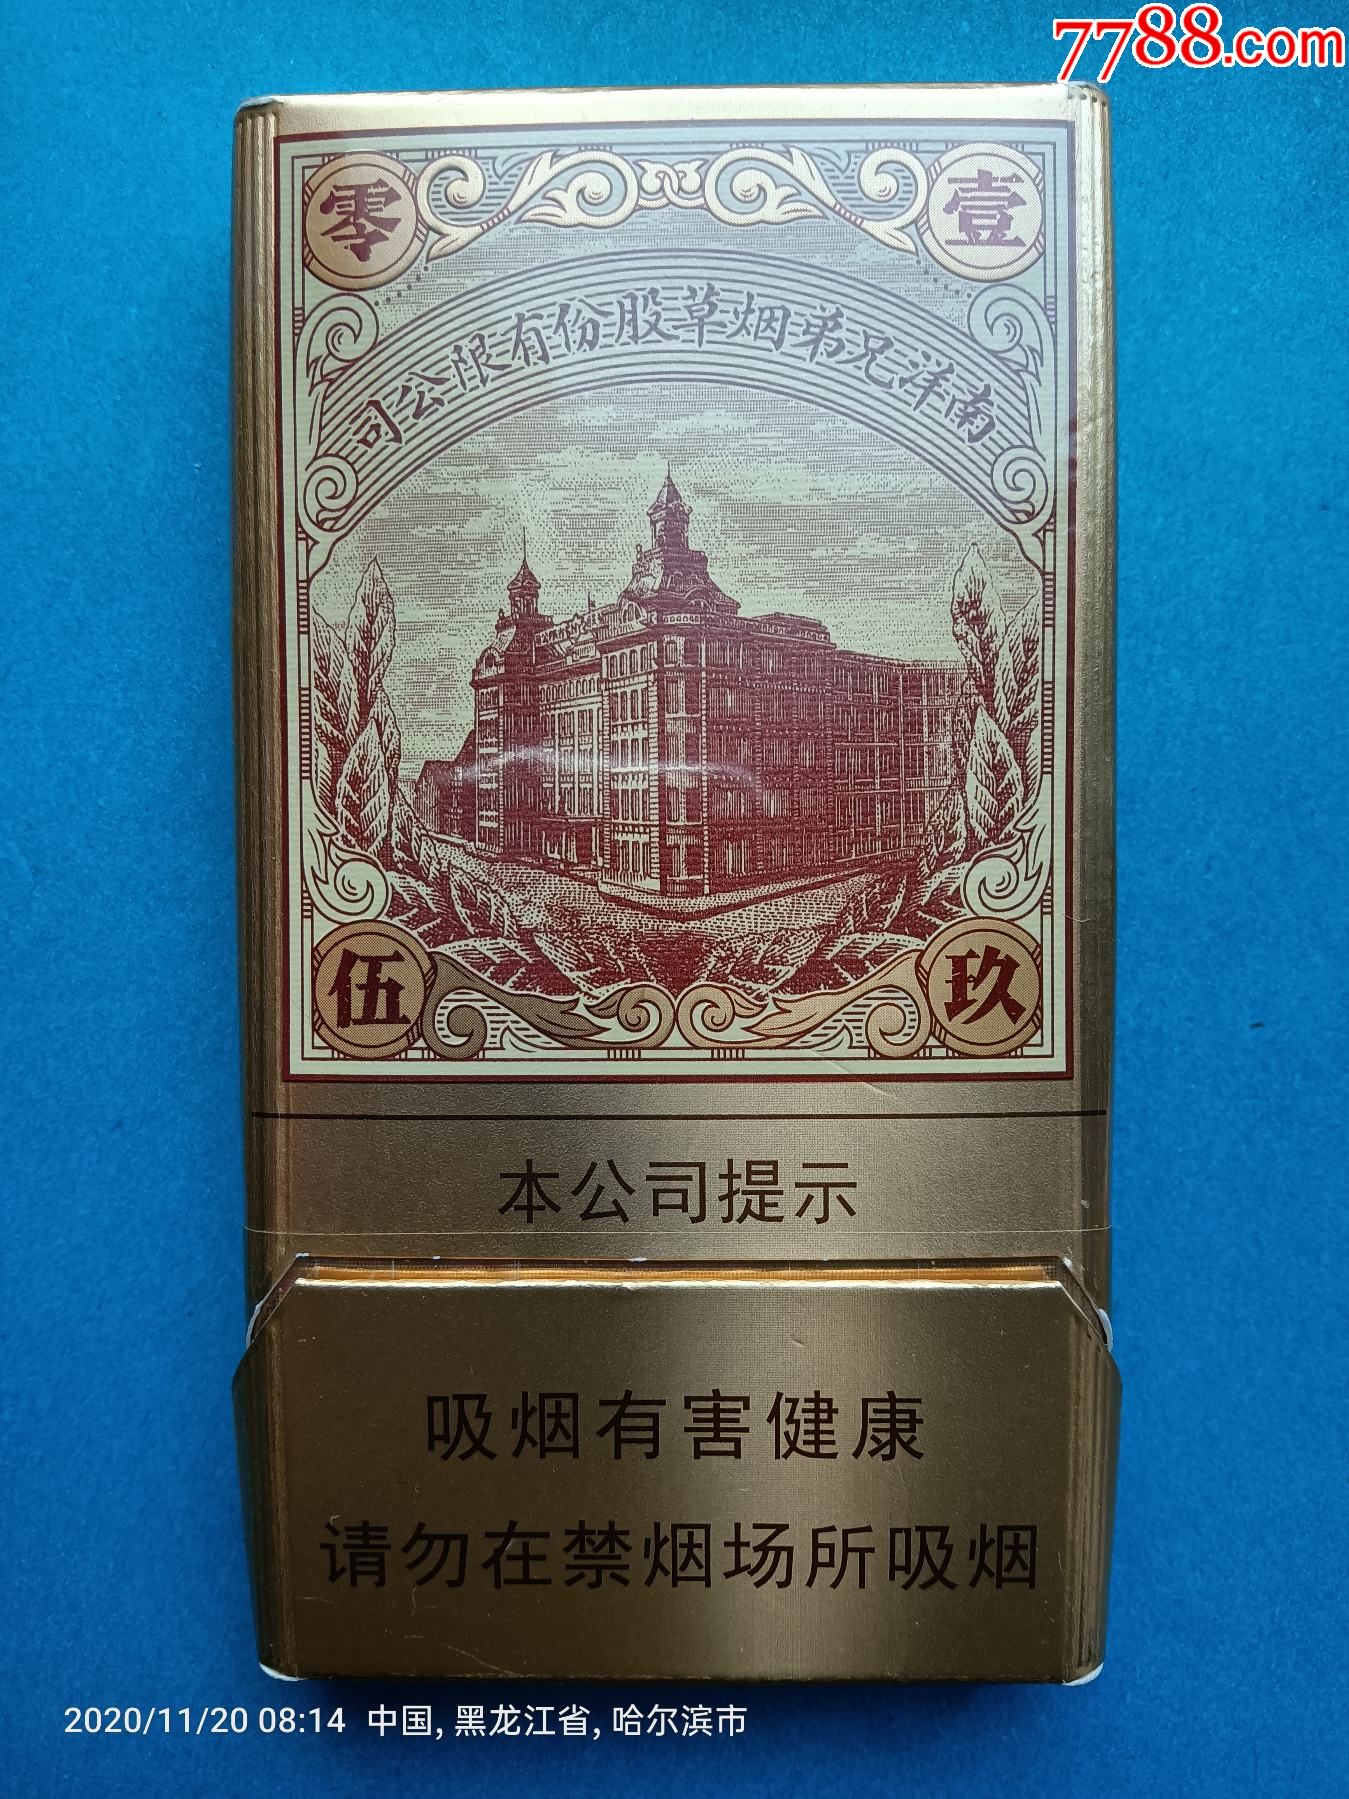 香港红双喜烟标南洋1905南洋兄弟烟草股份有限公司爆珠中国烟草总公司